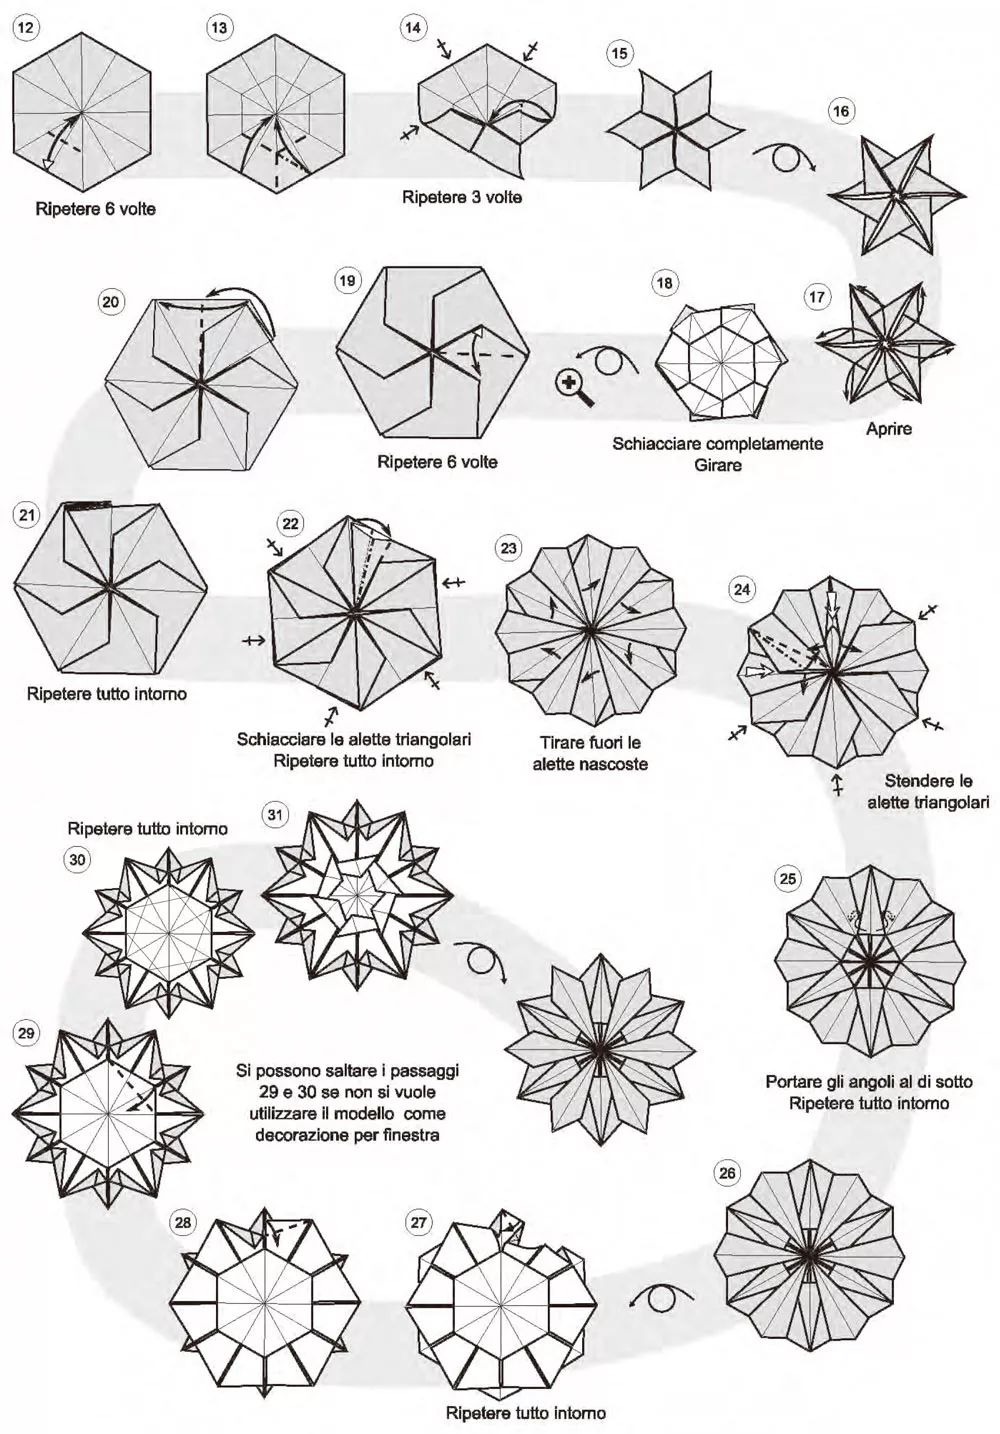 折纸雪花的制作方法图片